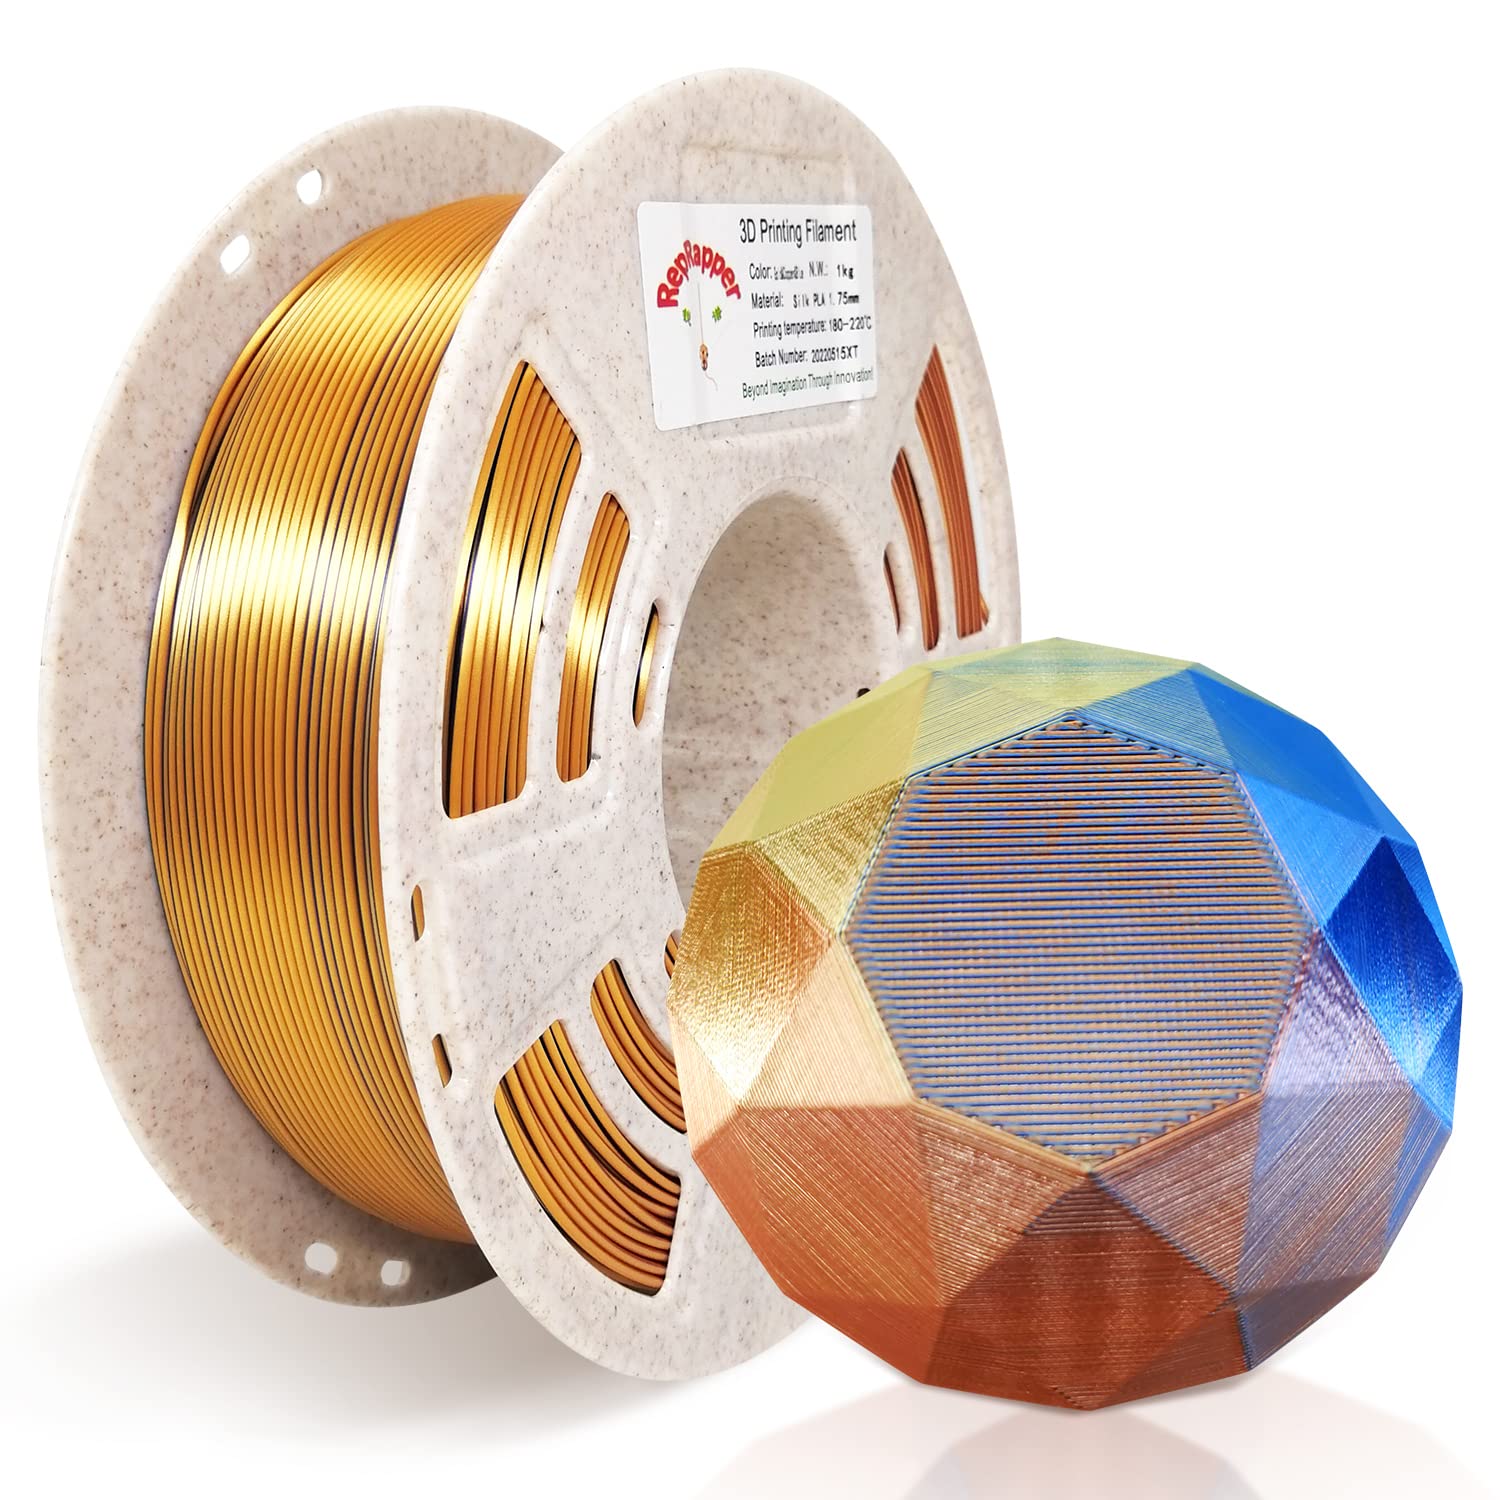 PLA Silk Tricolor Filament - Three-colored Filament